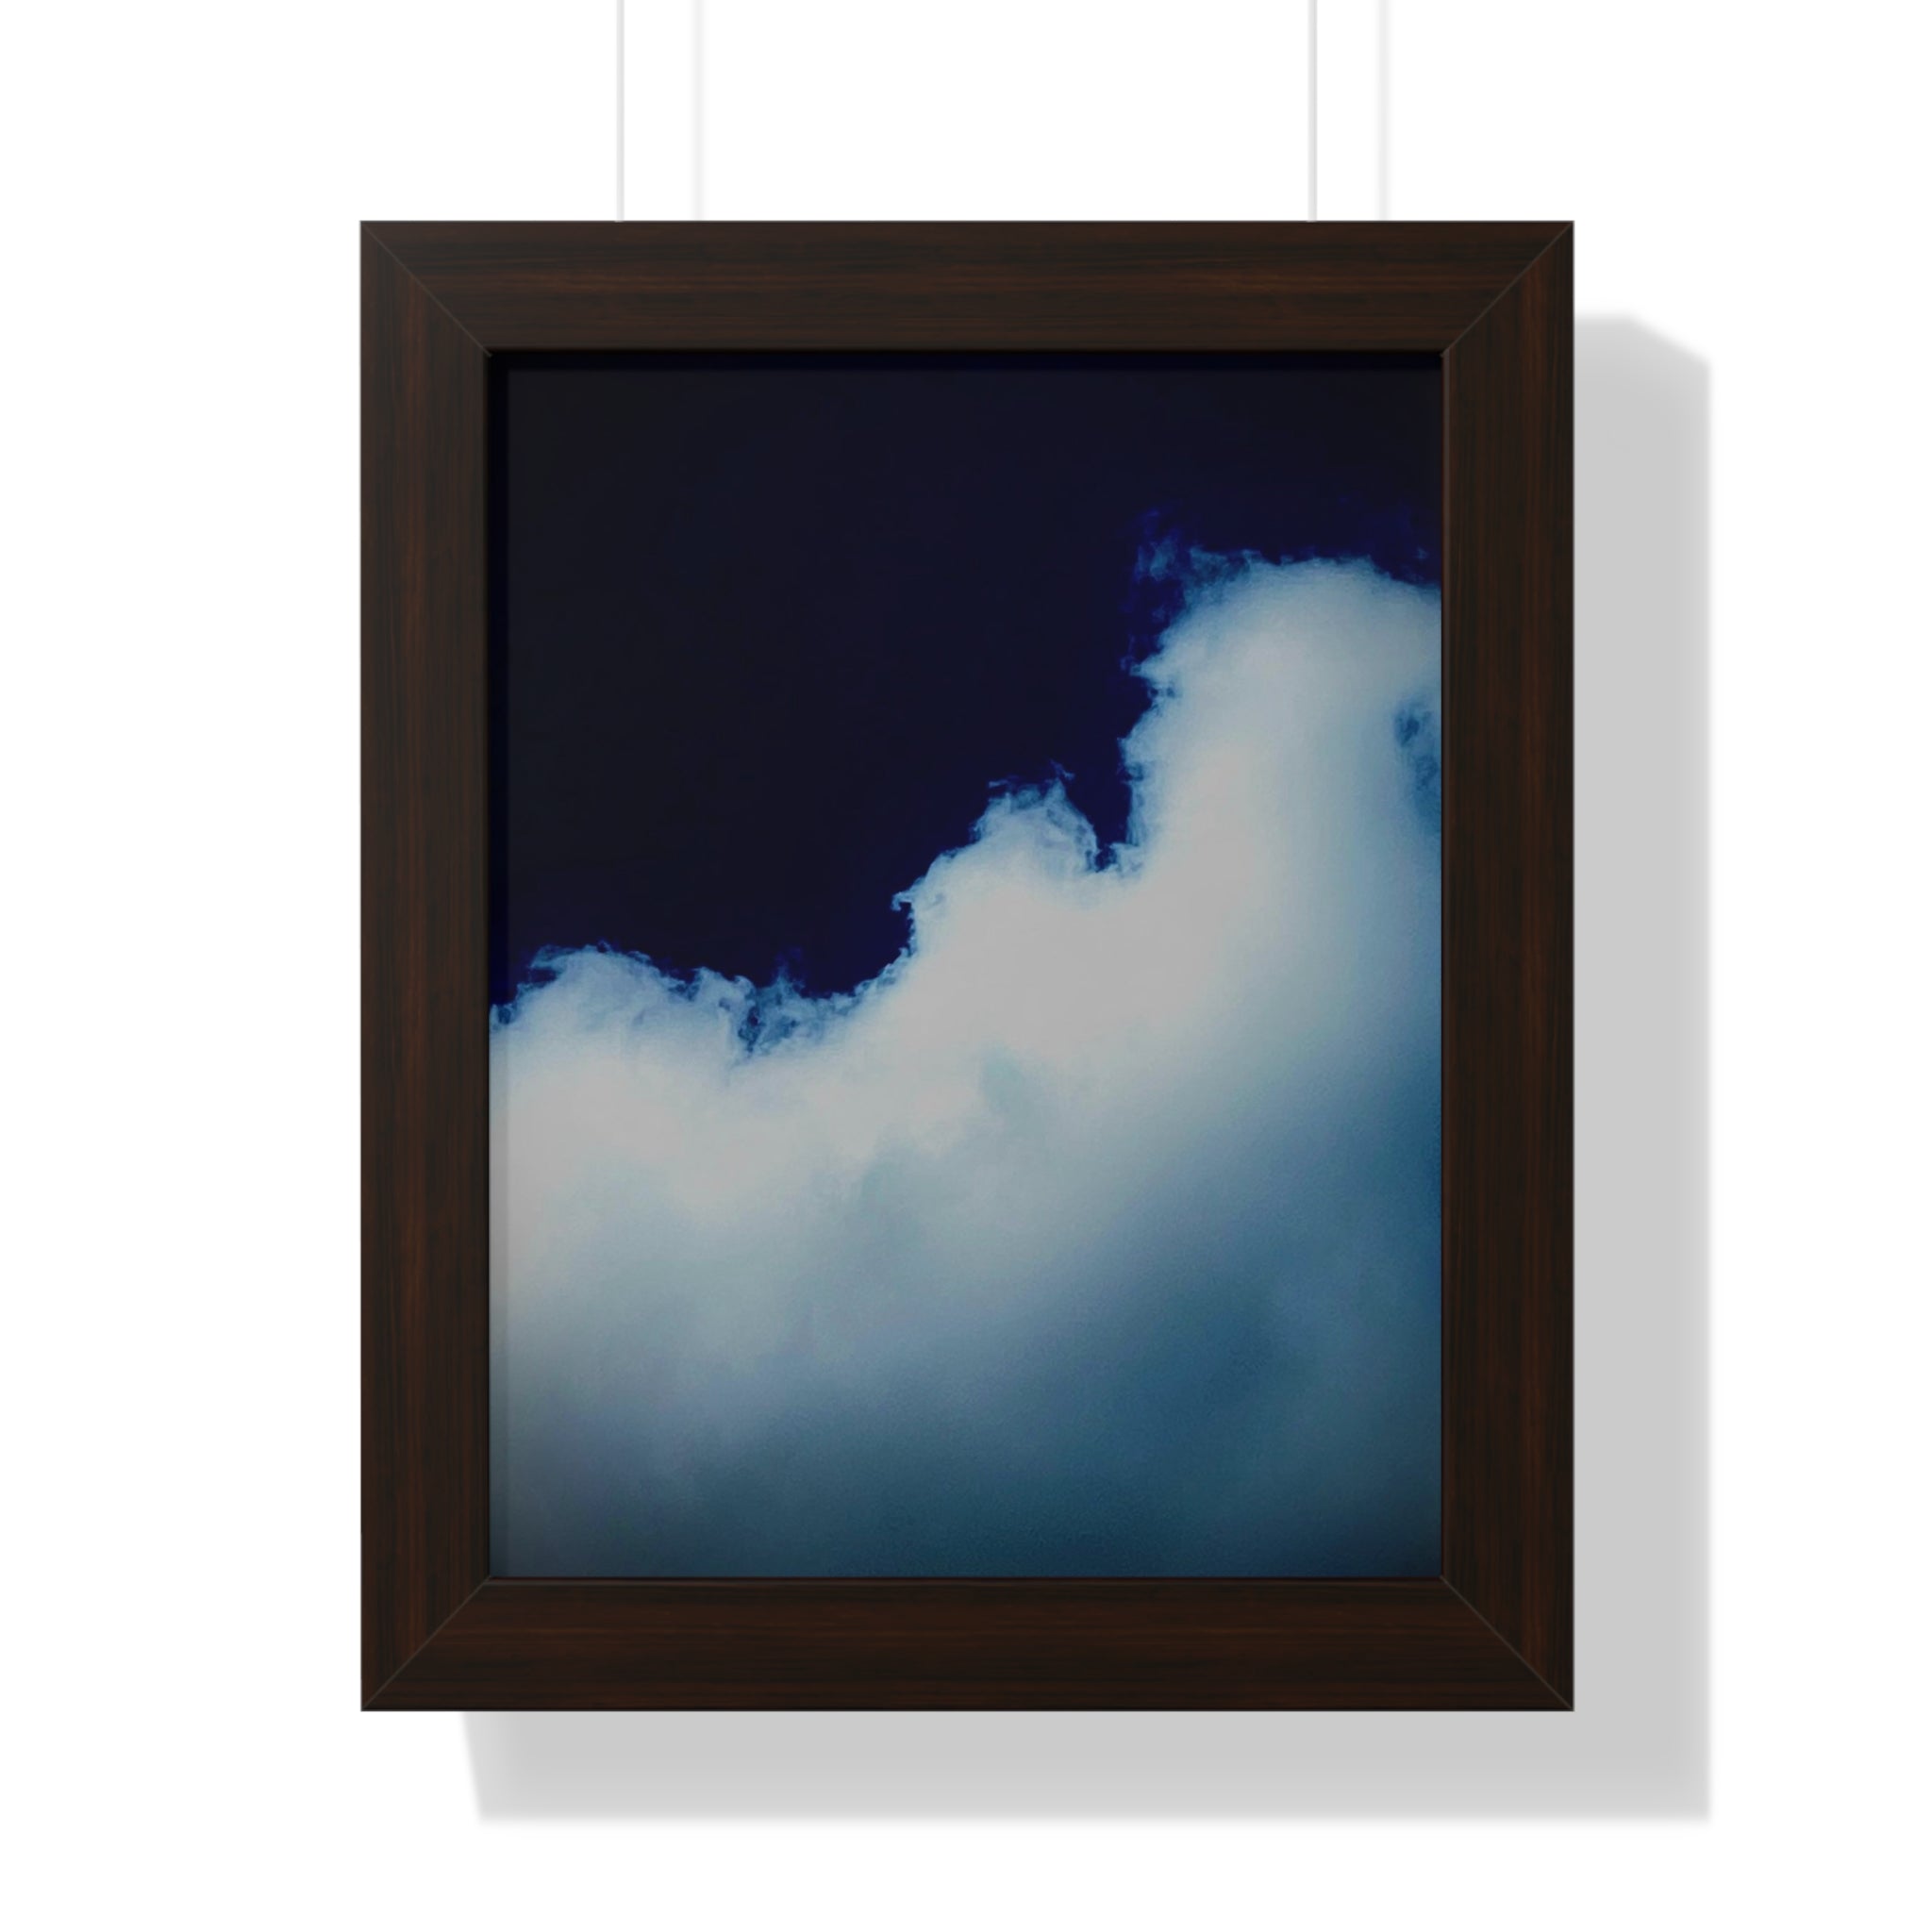 Framed 11" x 14" Cloud Poster by Jo Bird